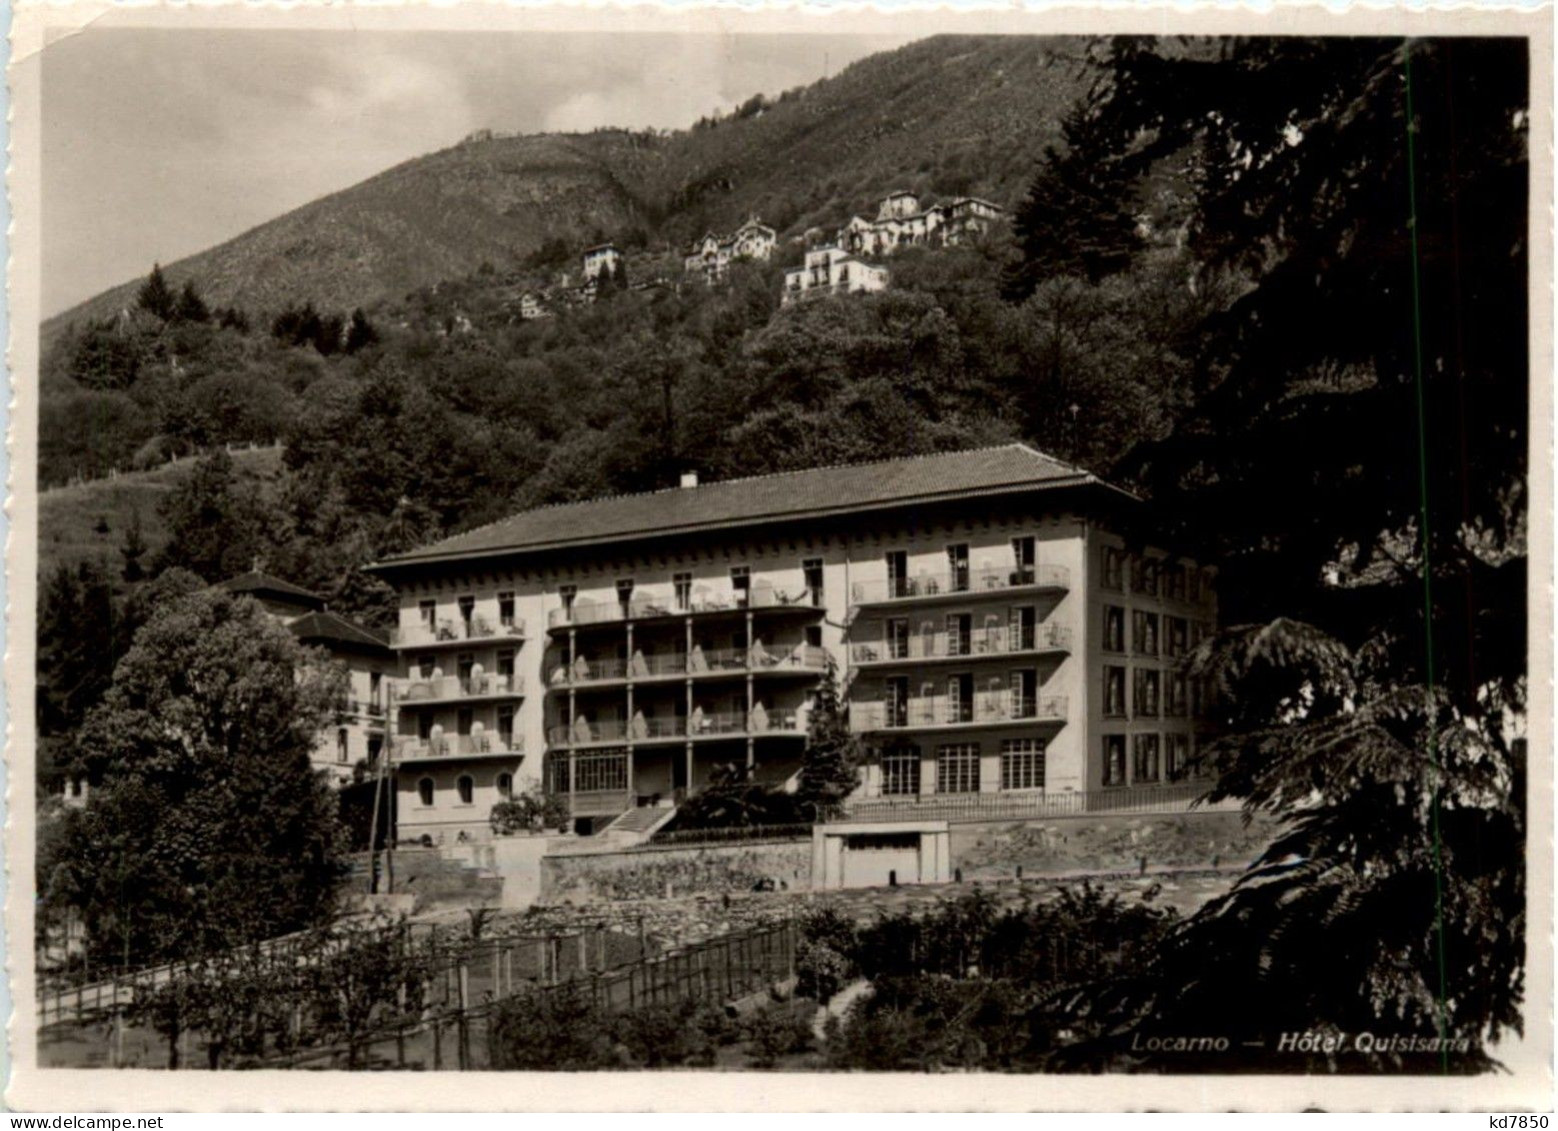 Locarno - Hotel Quisisana - Locarno